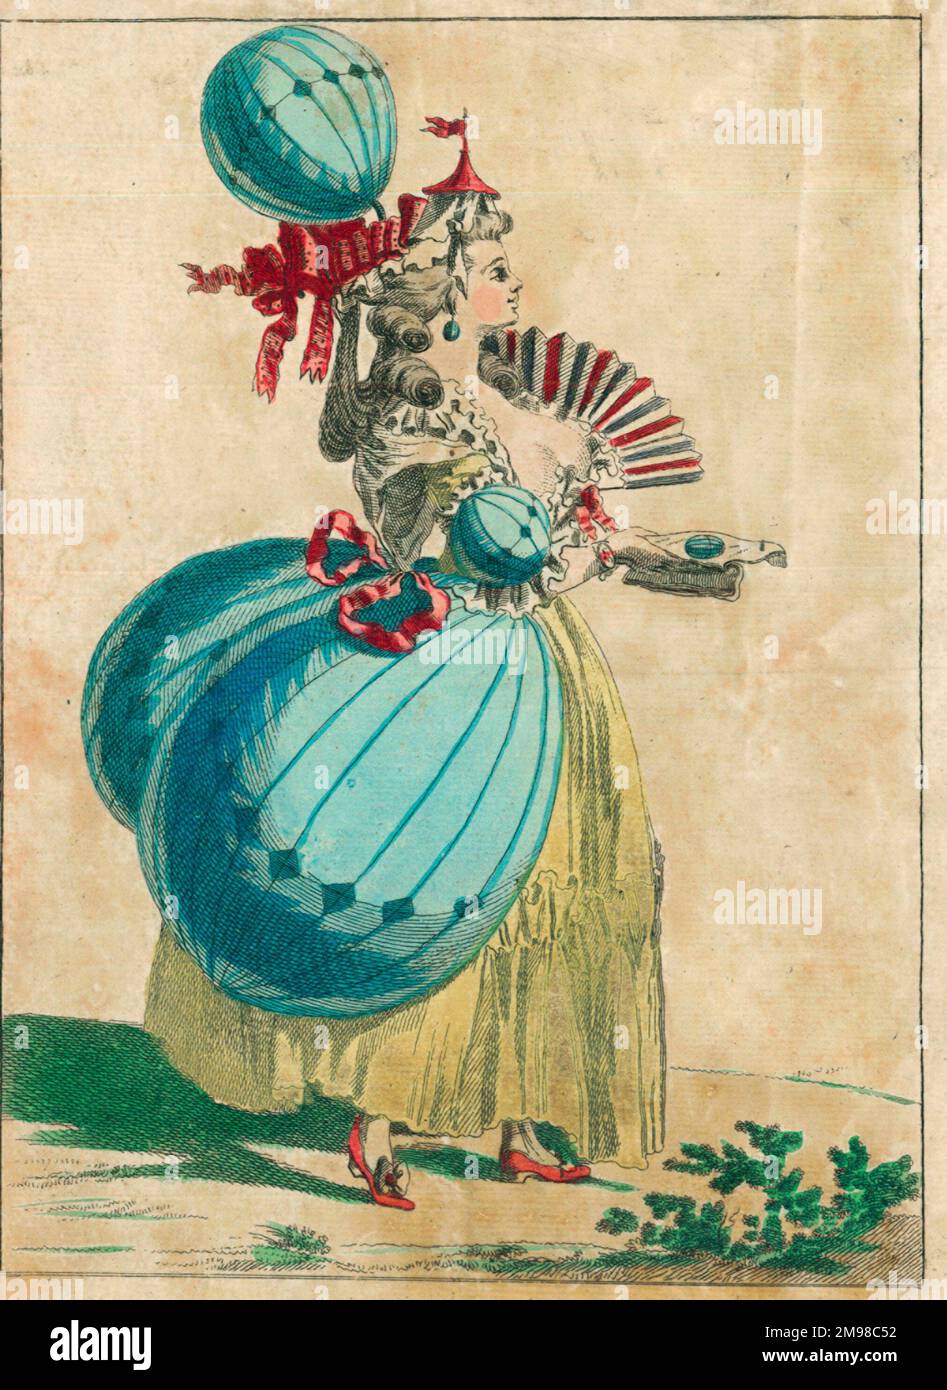 Ein Paar französische Lithografien aus dem späten 18. Jahrhundert, die die "Ballonmanie" widerspiegeln, die in ganz Europa zur Zeit der ersten Ballonaufsteigung herrschte, wobei die modische Dame und der Gentleman aufgeblasene Ballondesigns in ihre Kostüme (Hüte, Kleid, Armschellen usw.) (1/2) einbrachten. Stockfoto